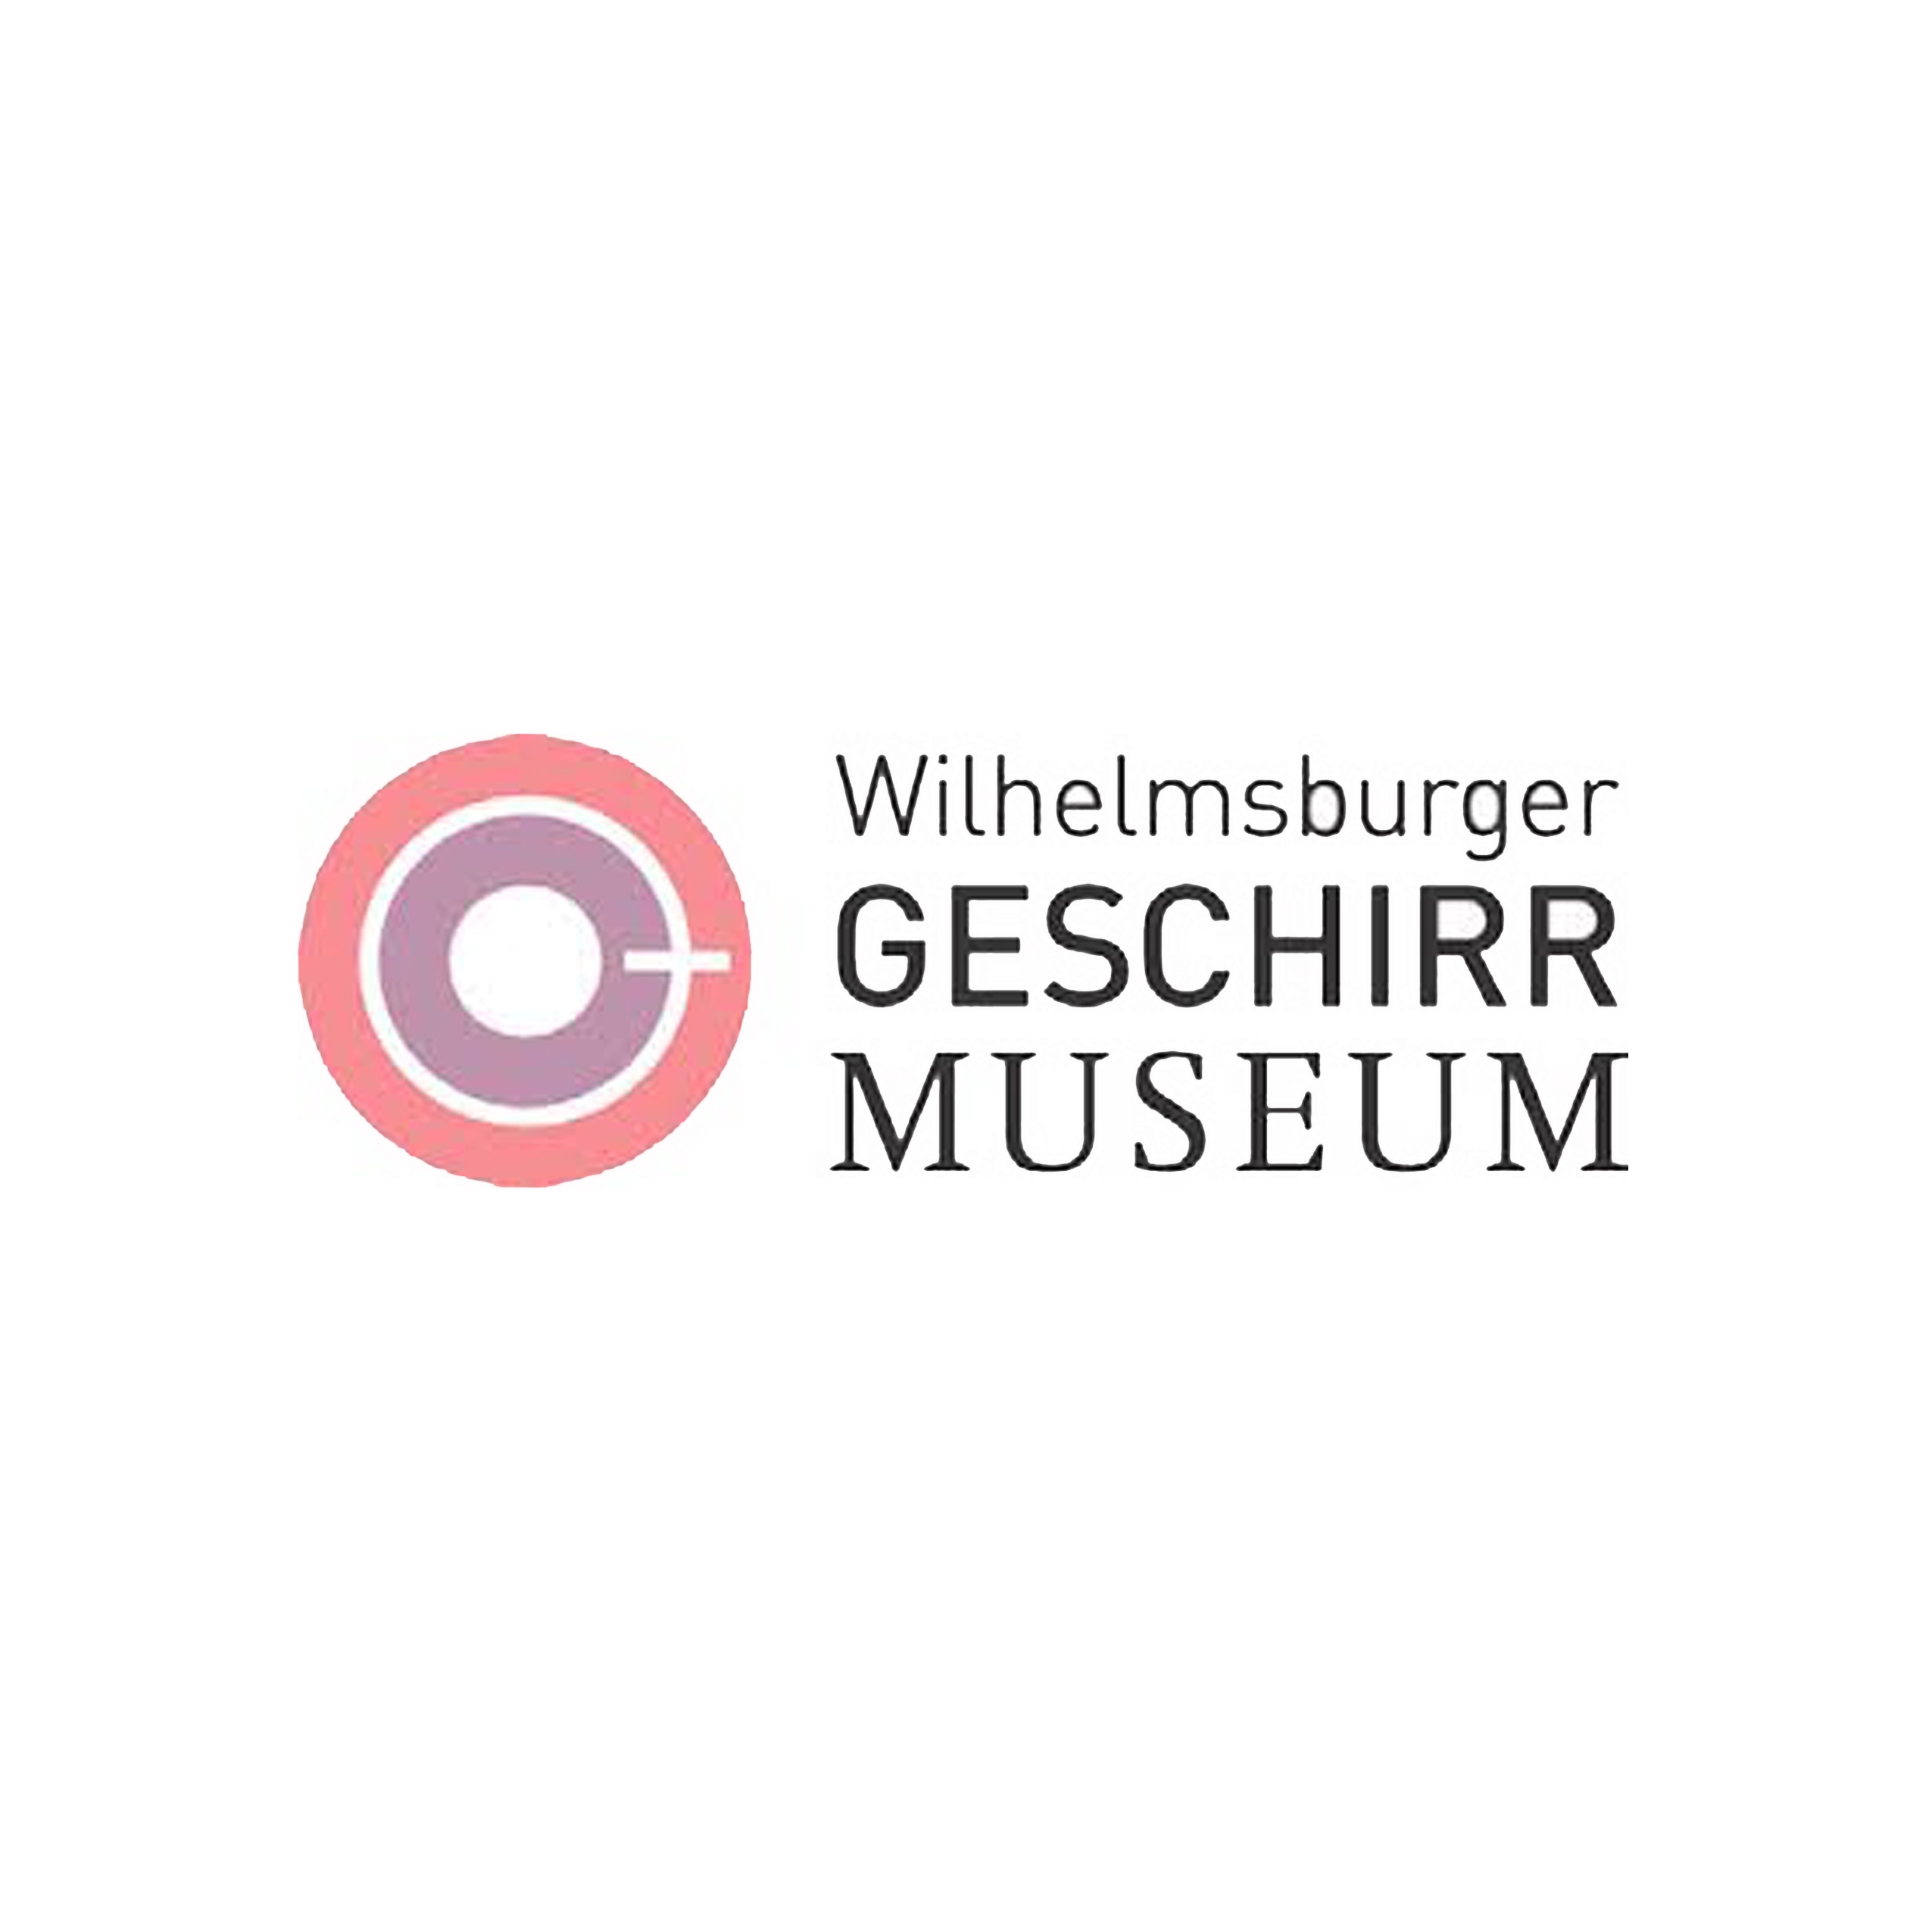 Wilhelmsburger-Geschirrmuseum